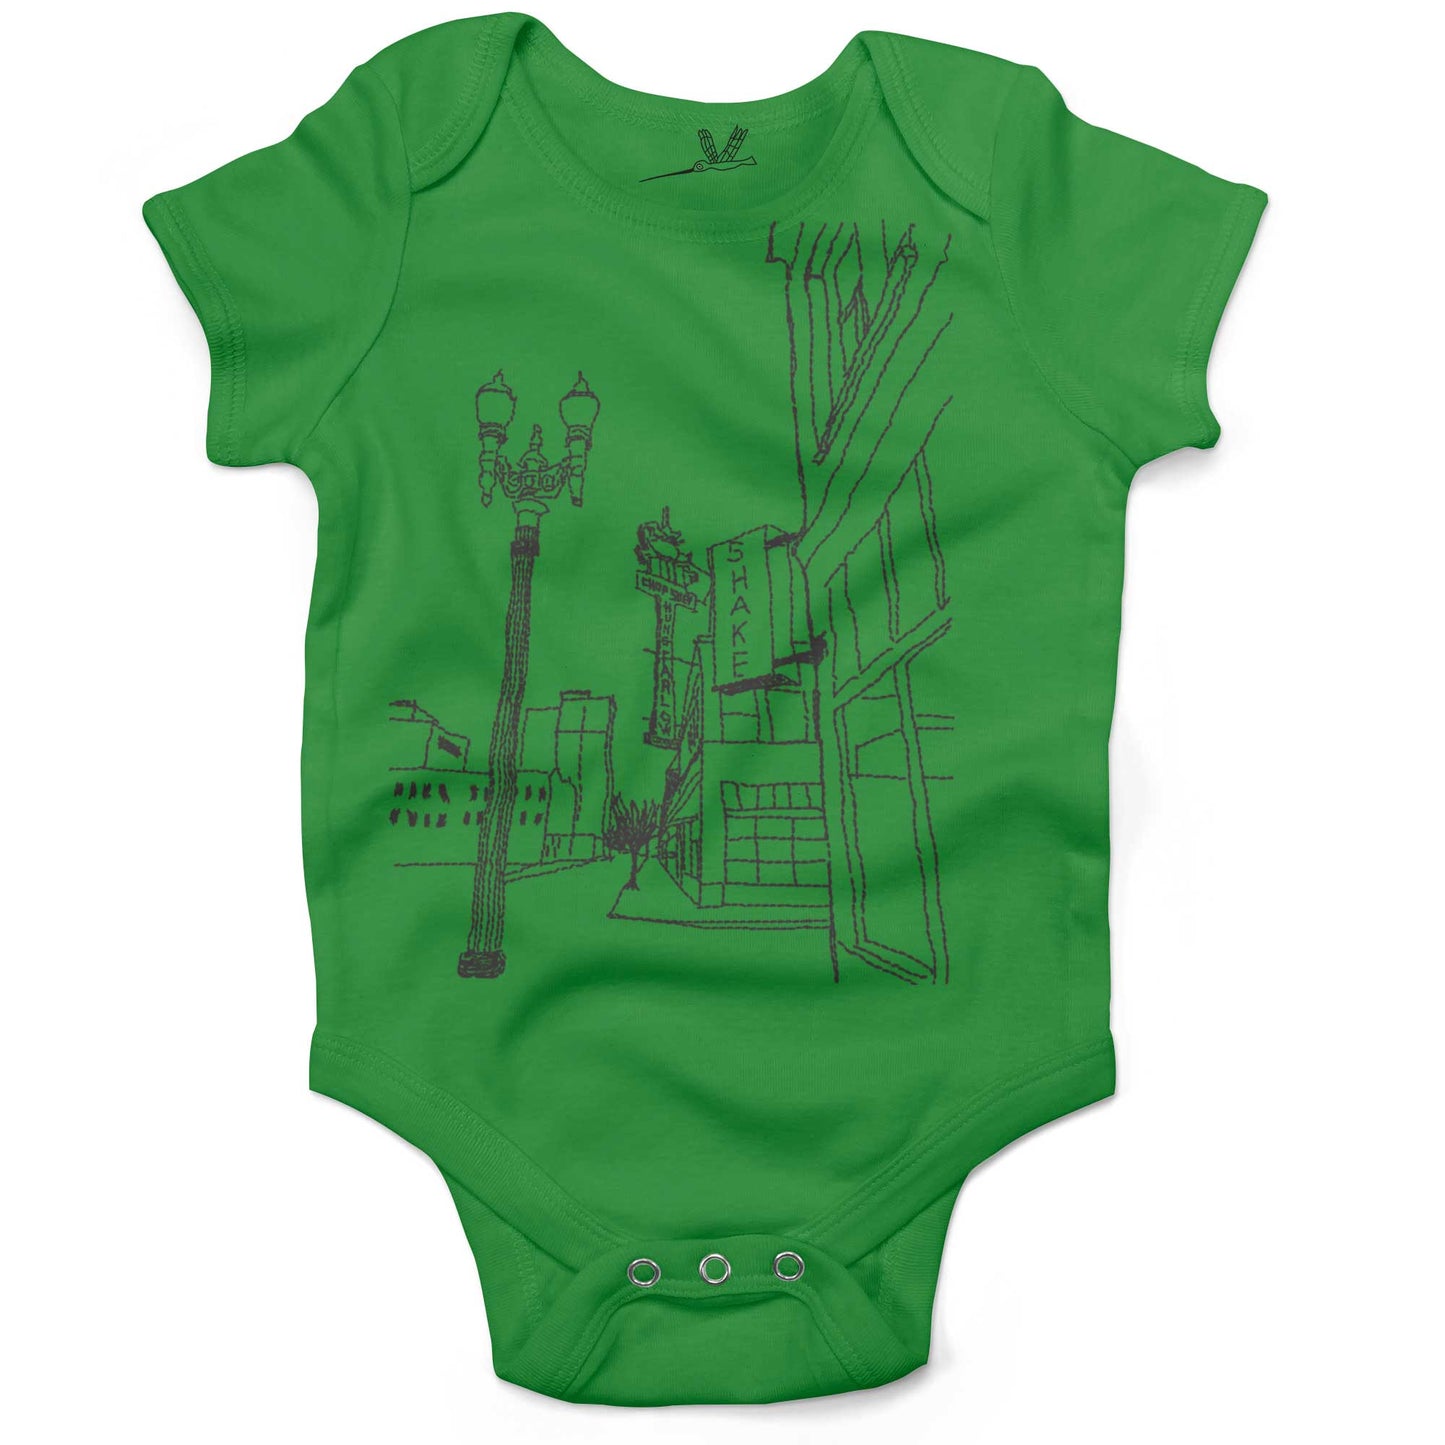 Hung Far Low Restaurant Infant Bodysuit-Grass Green-3-6 months